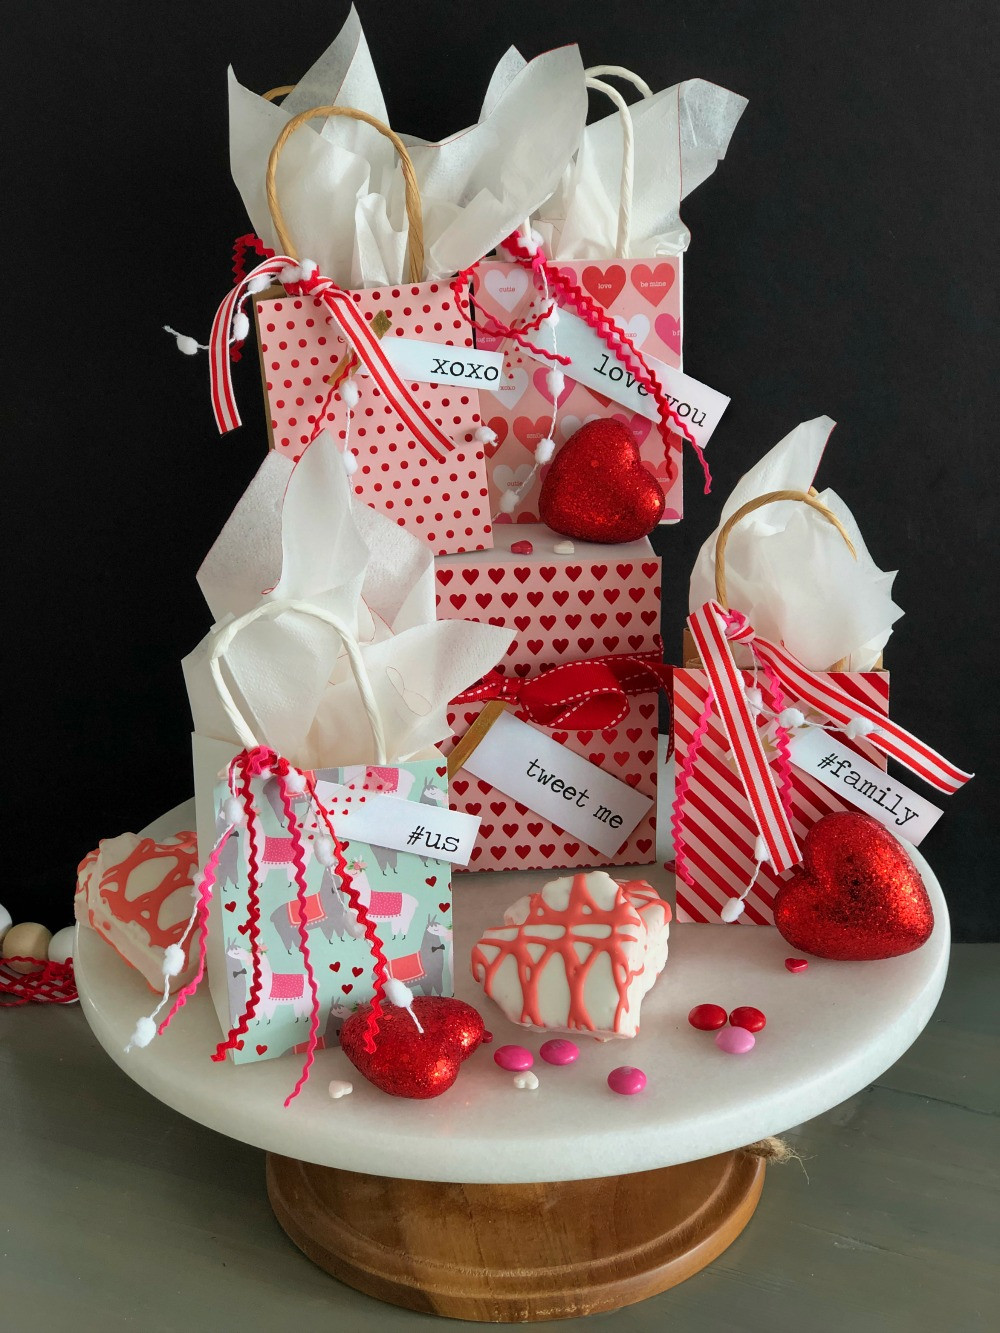 Easy To Make Valentine Gift Ideas
 DIY Valentine Decor